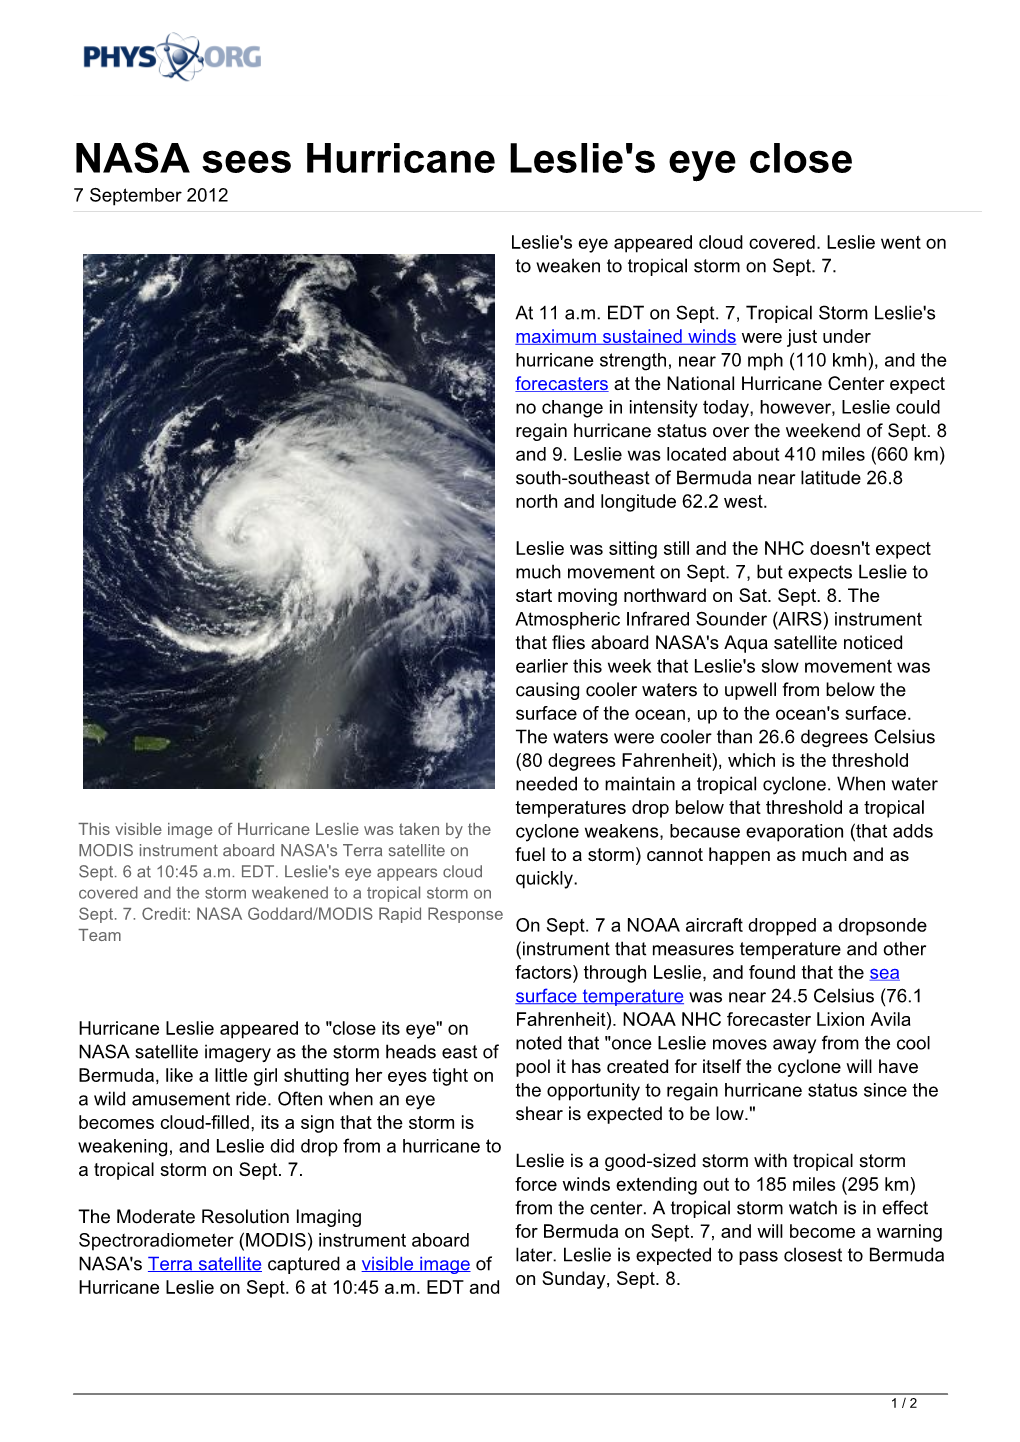 NASA Sees Hurricane Leslie's Eye Close 7 September 2012